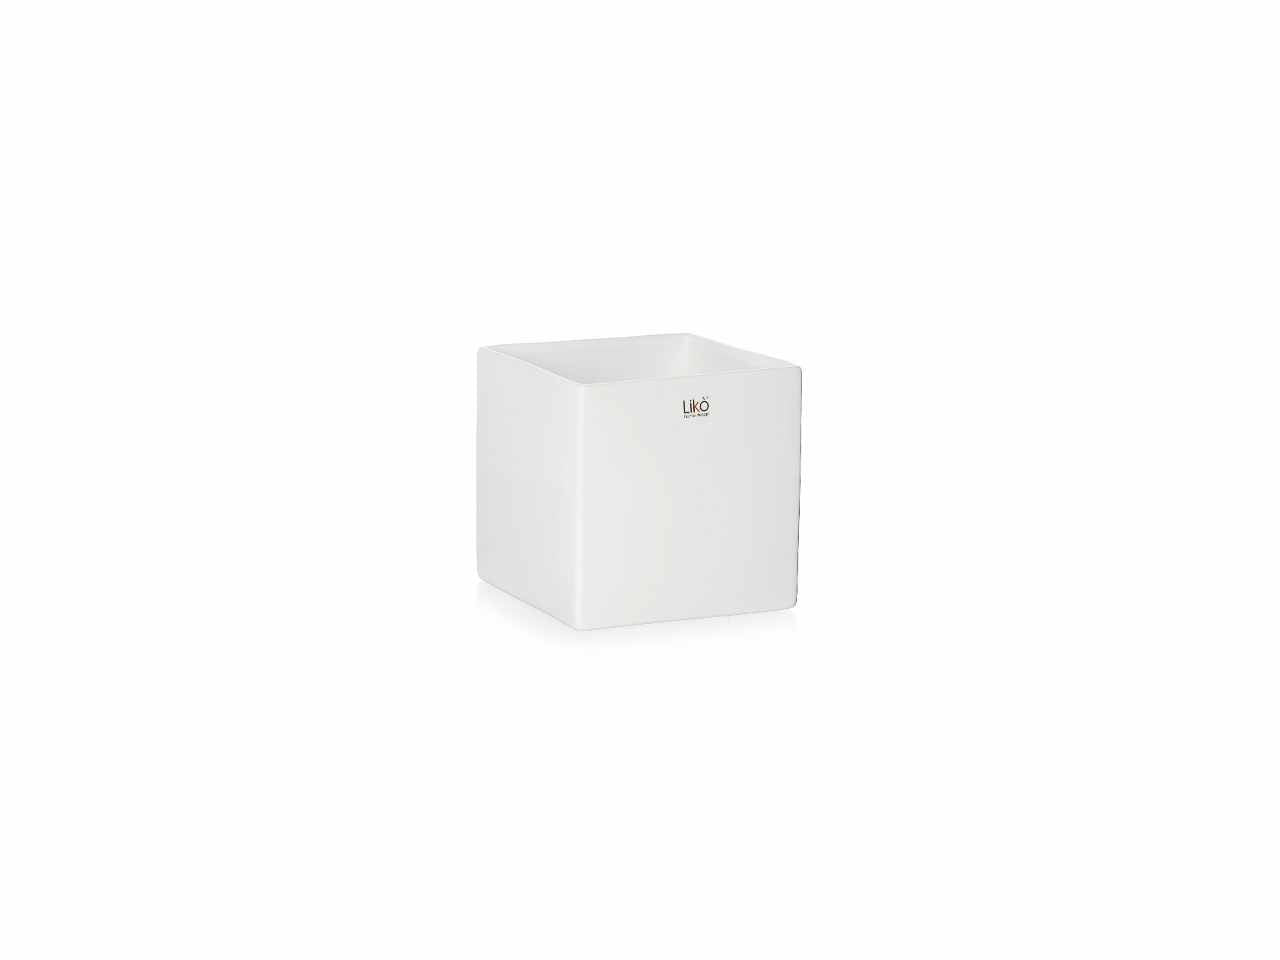 Cubo 7,5x7,5cm bianco cr35/07w